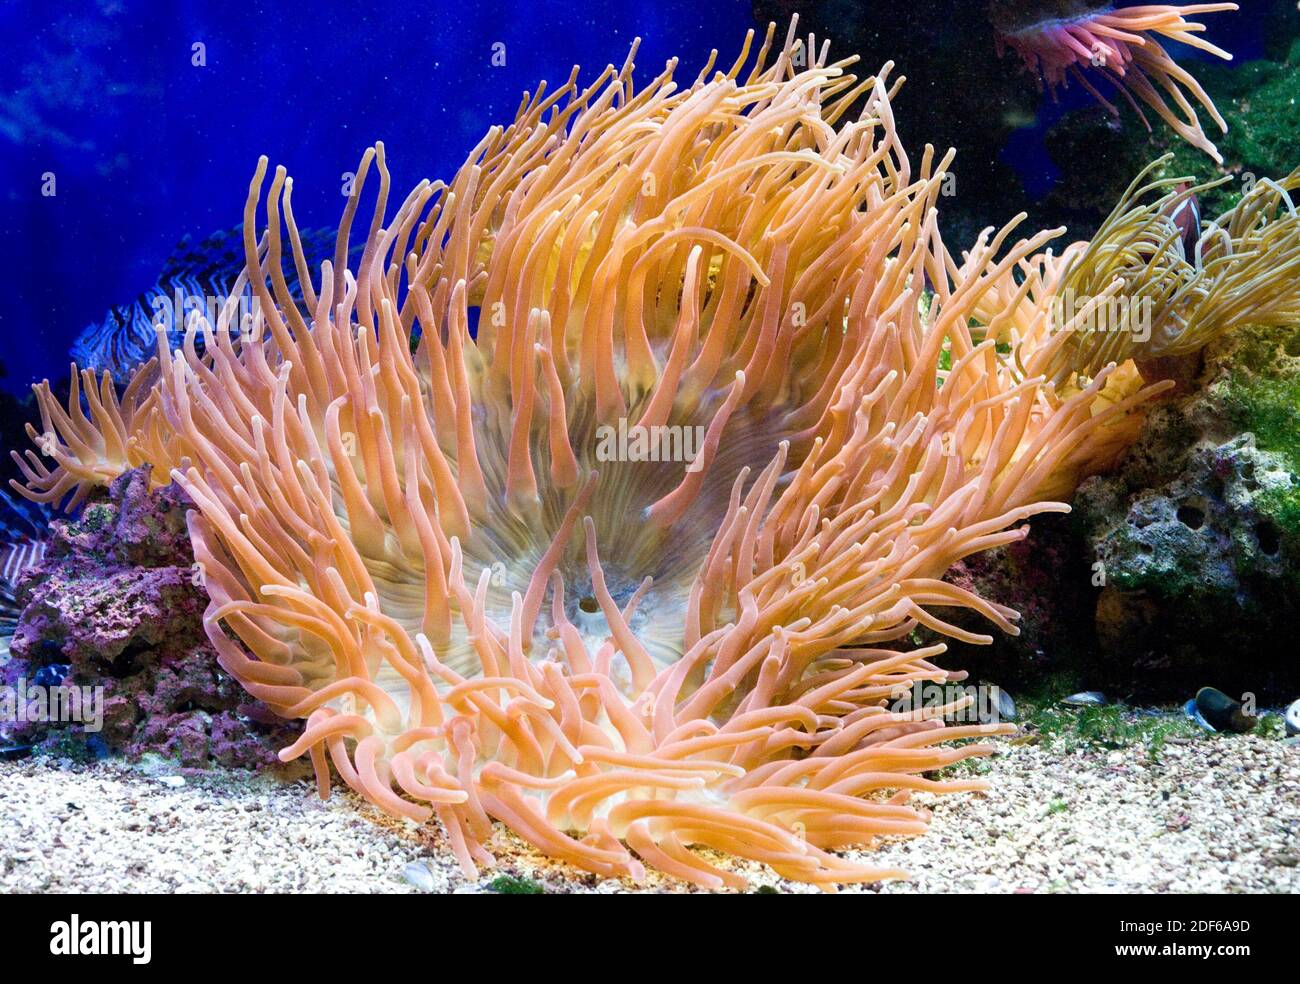 La anémona marina magnífica (Heteractis magnifica) vive en aguas tropicales del océano Indo-Pacífico. Foto tomada en cautiverio. Foto de stock